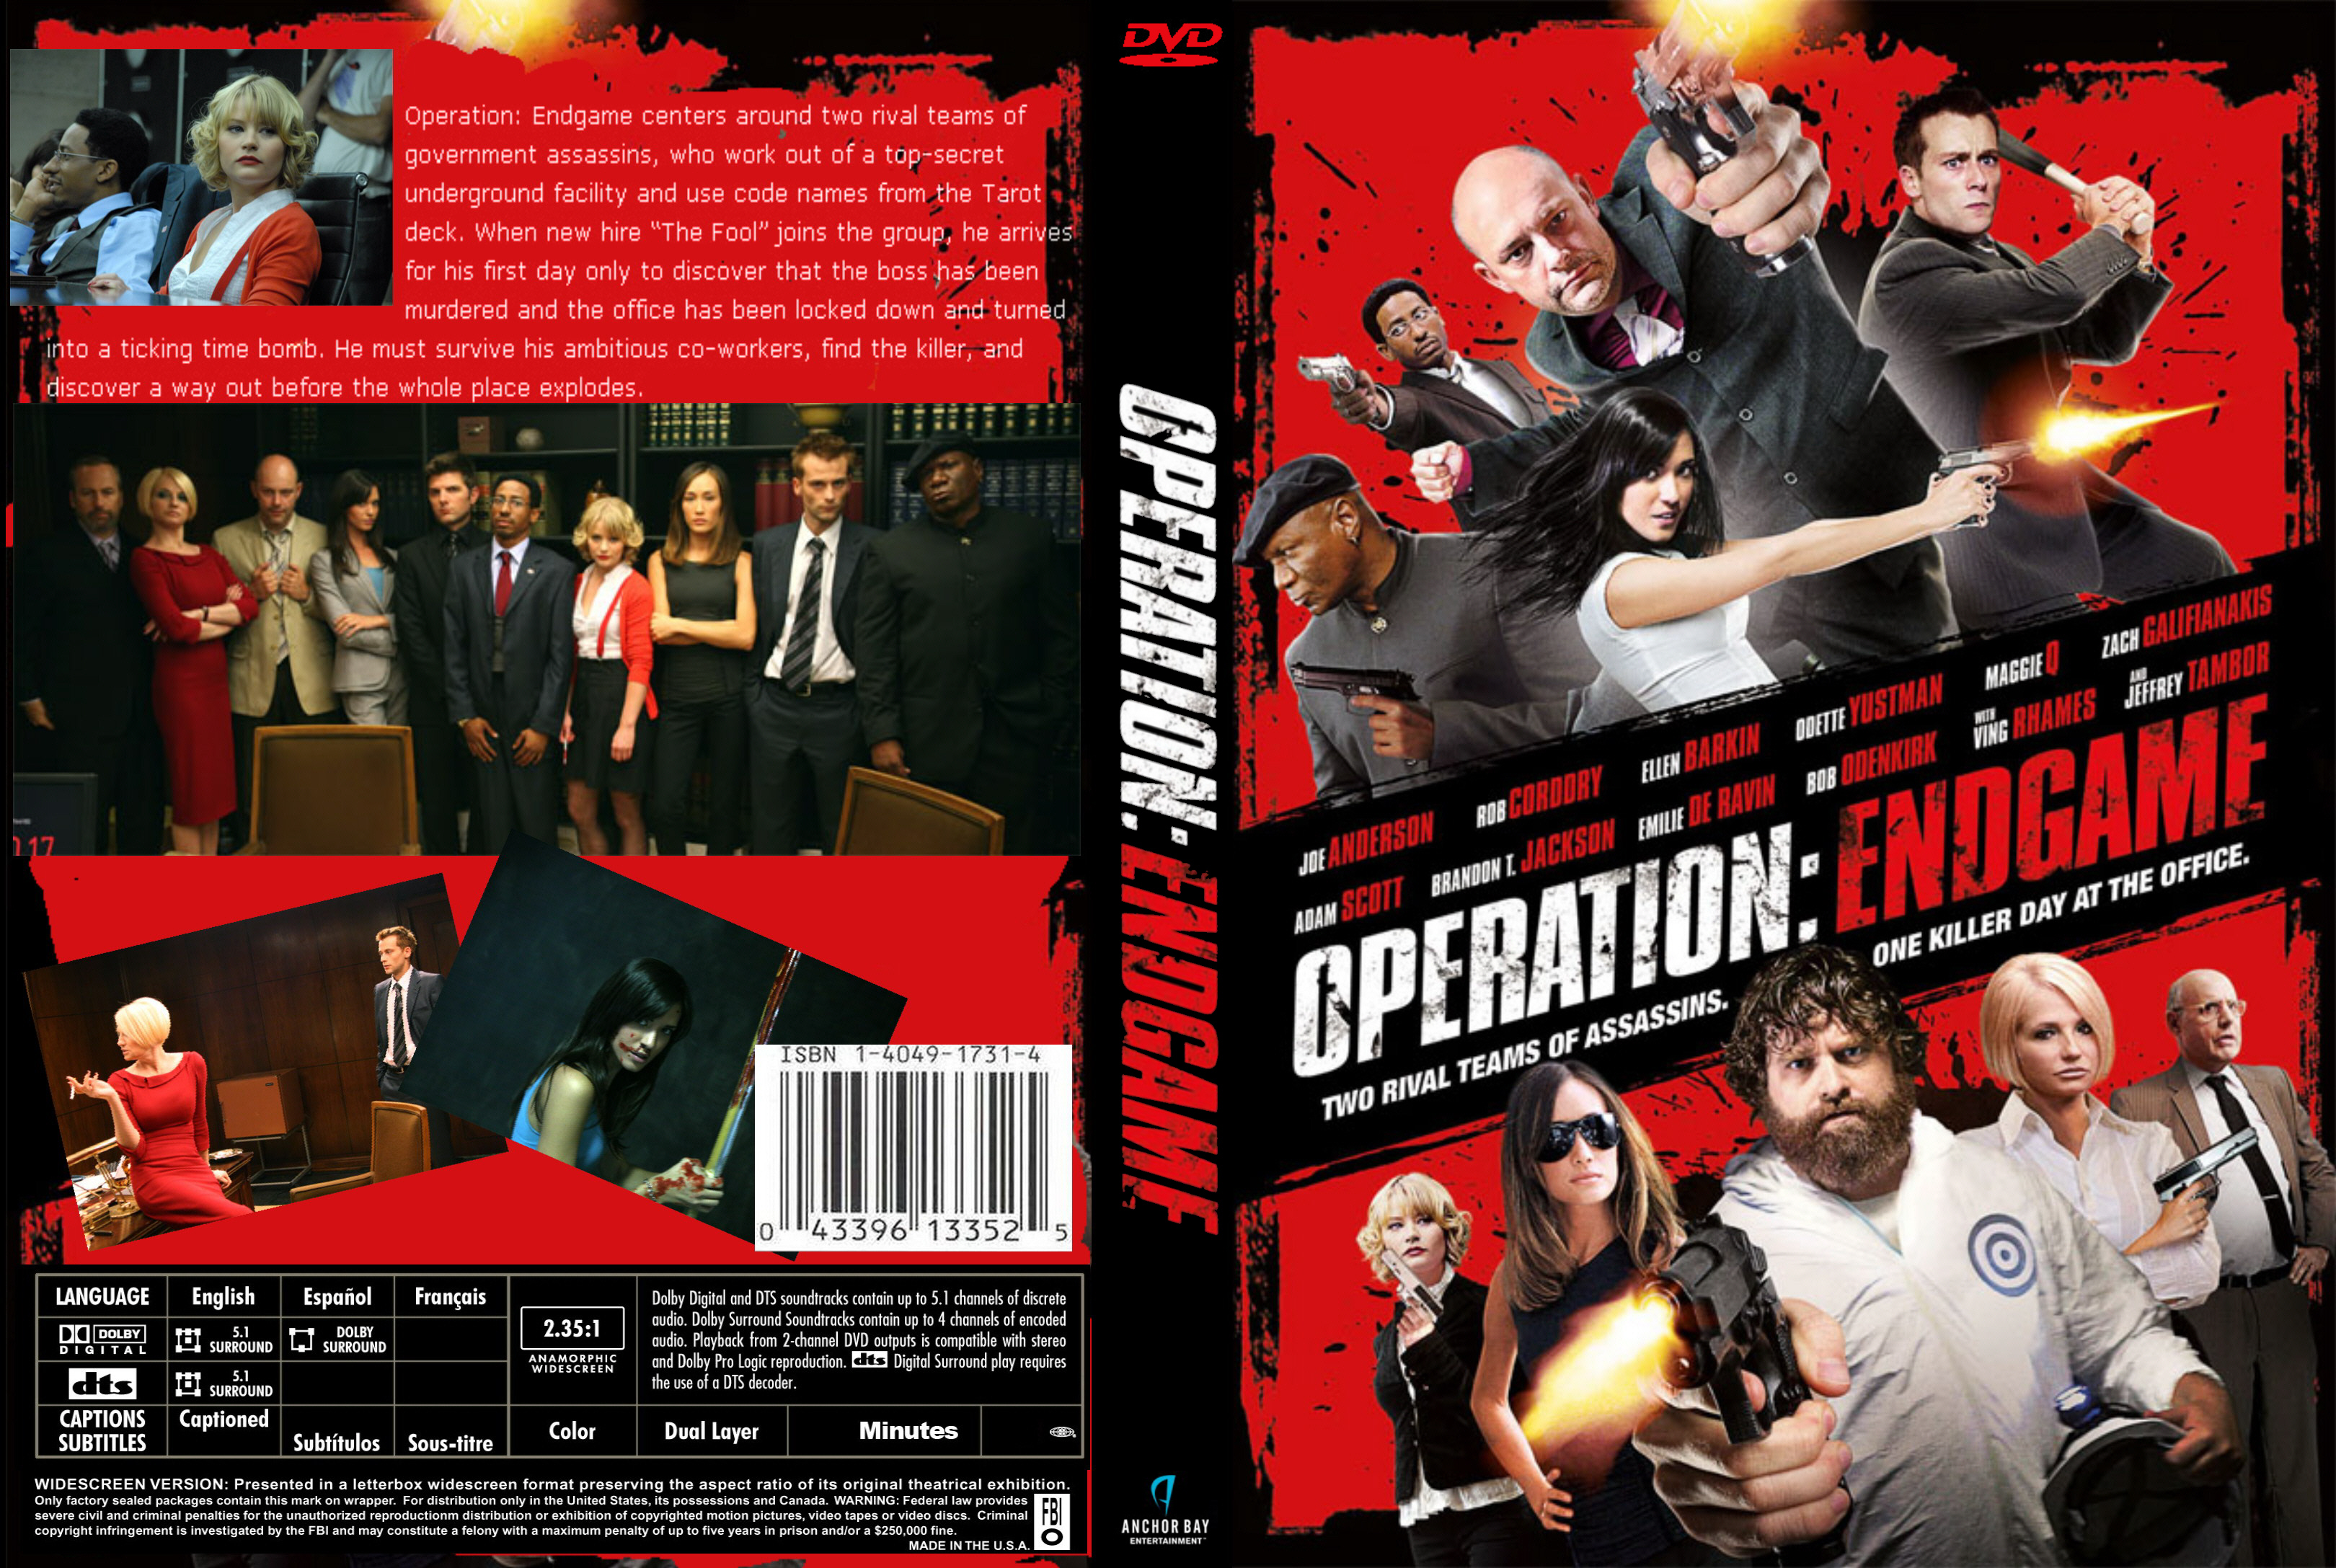 Chương Trình Lật Tẩy – Operation: Endgame (2010) Full HD Vietsub